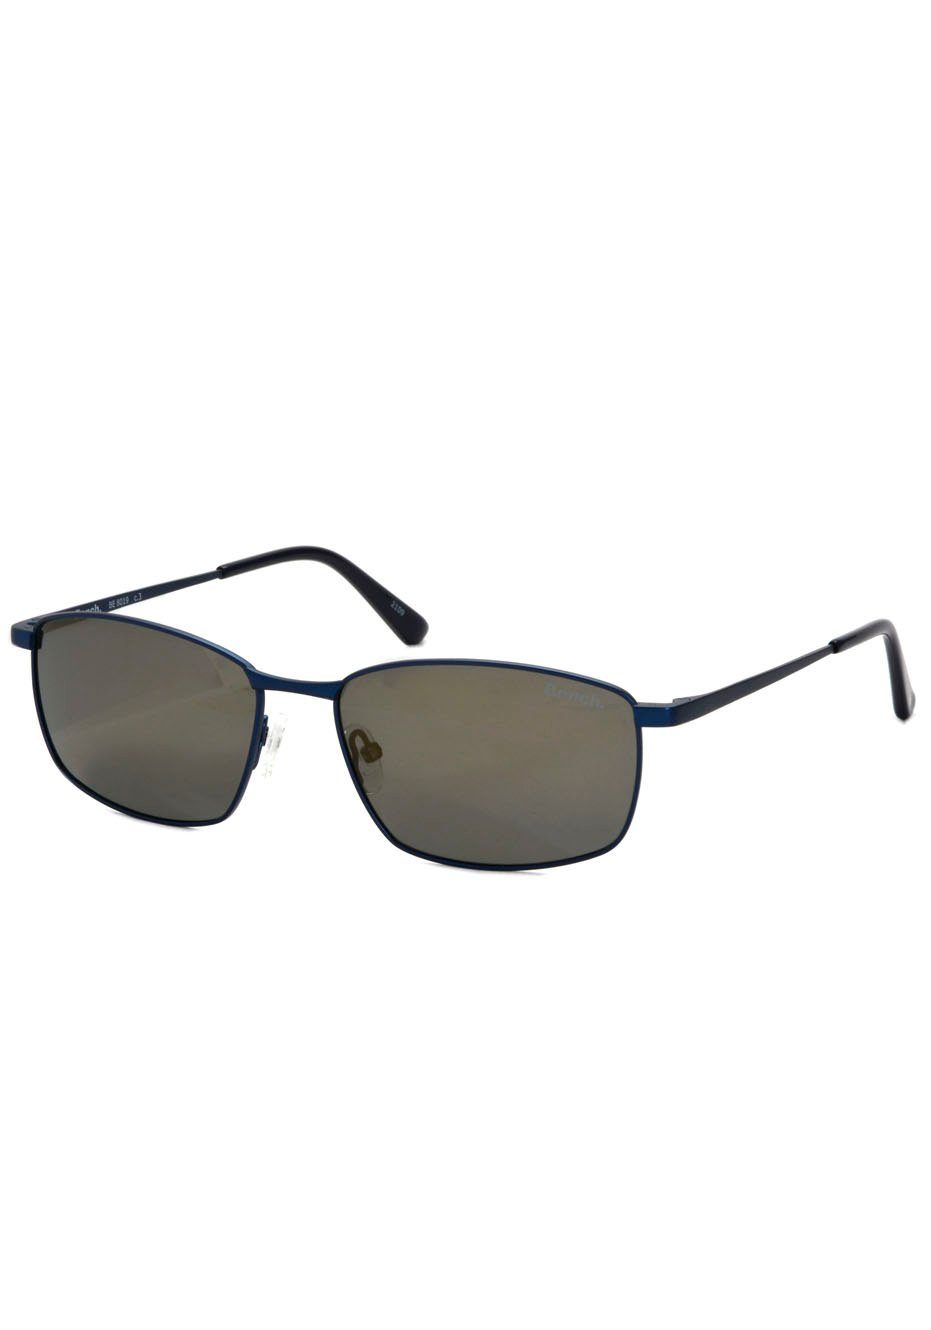 Bench. Sonnenbrille ultraleicht für höchste Ansprüche an Material-Qualität dunkelblau